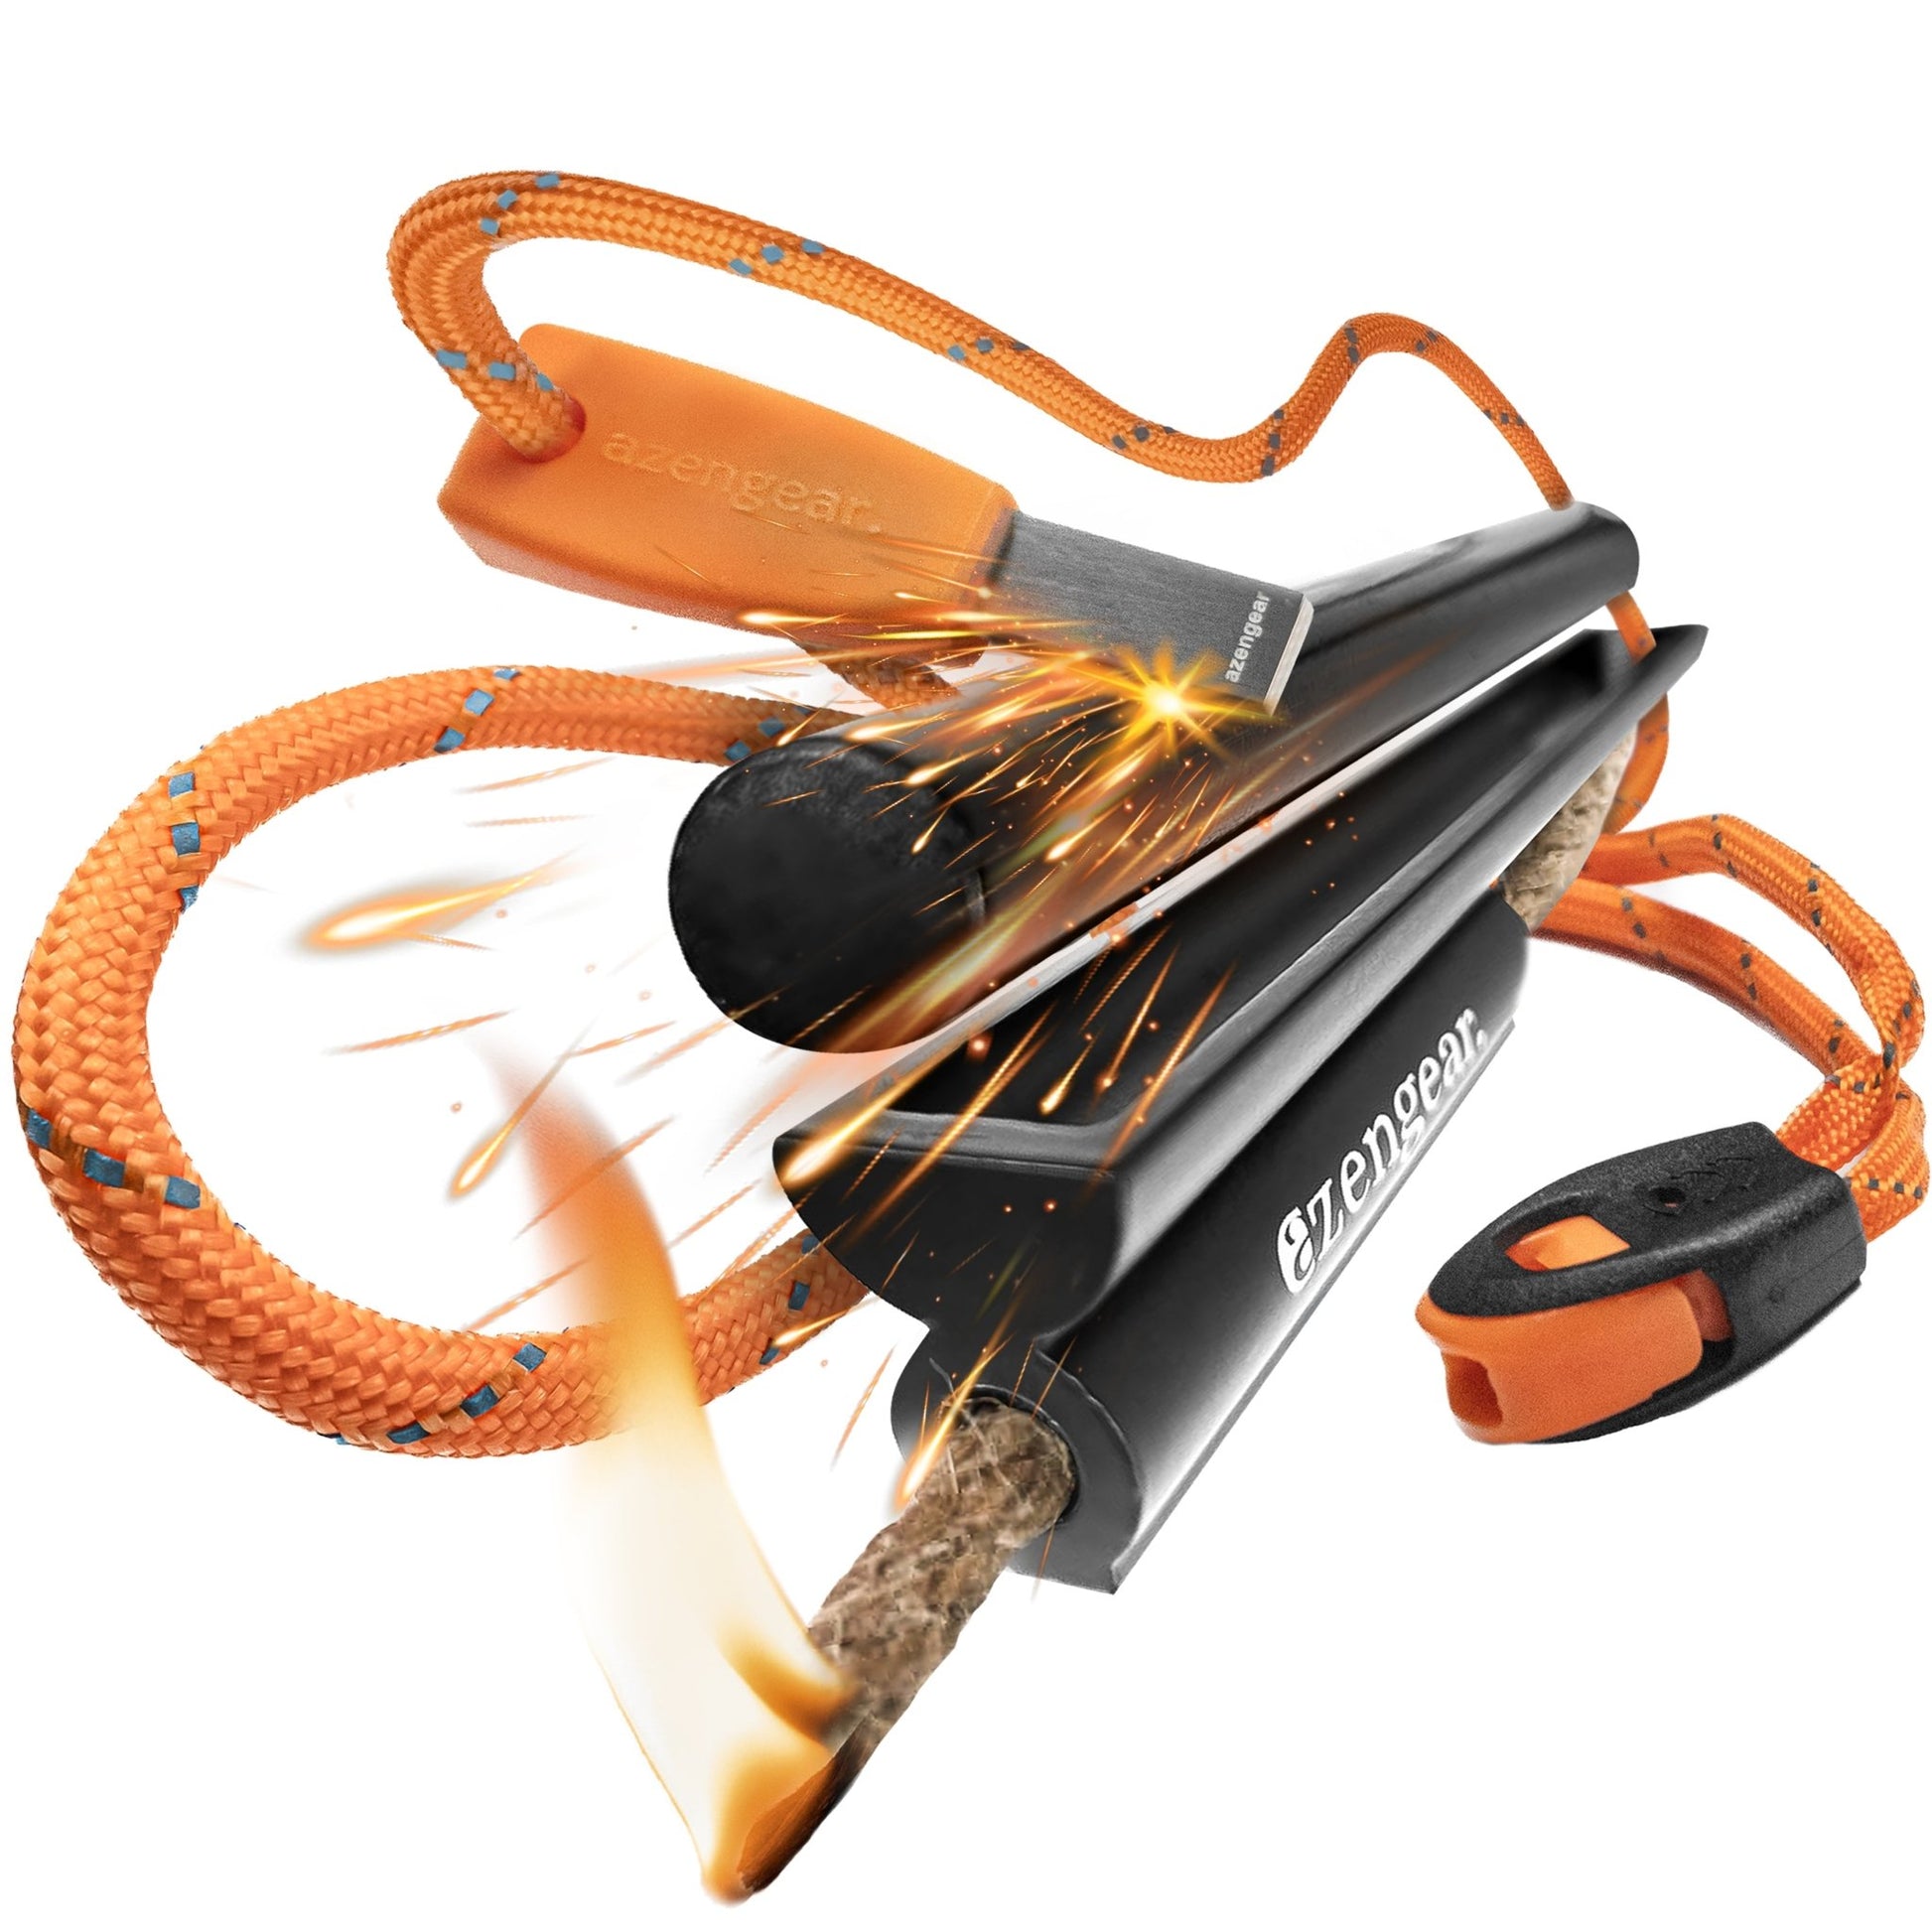 Afoxsos Portable Fire Starter Flint Steel Striker Ferro Rod